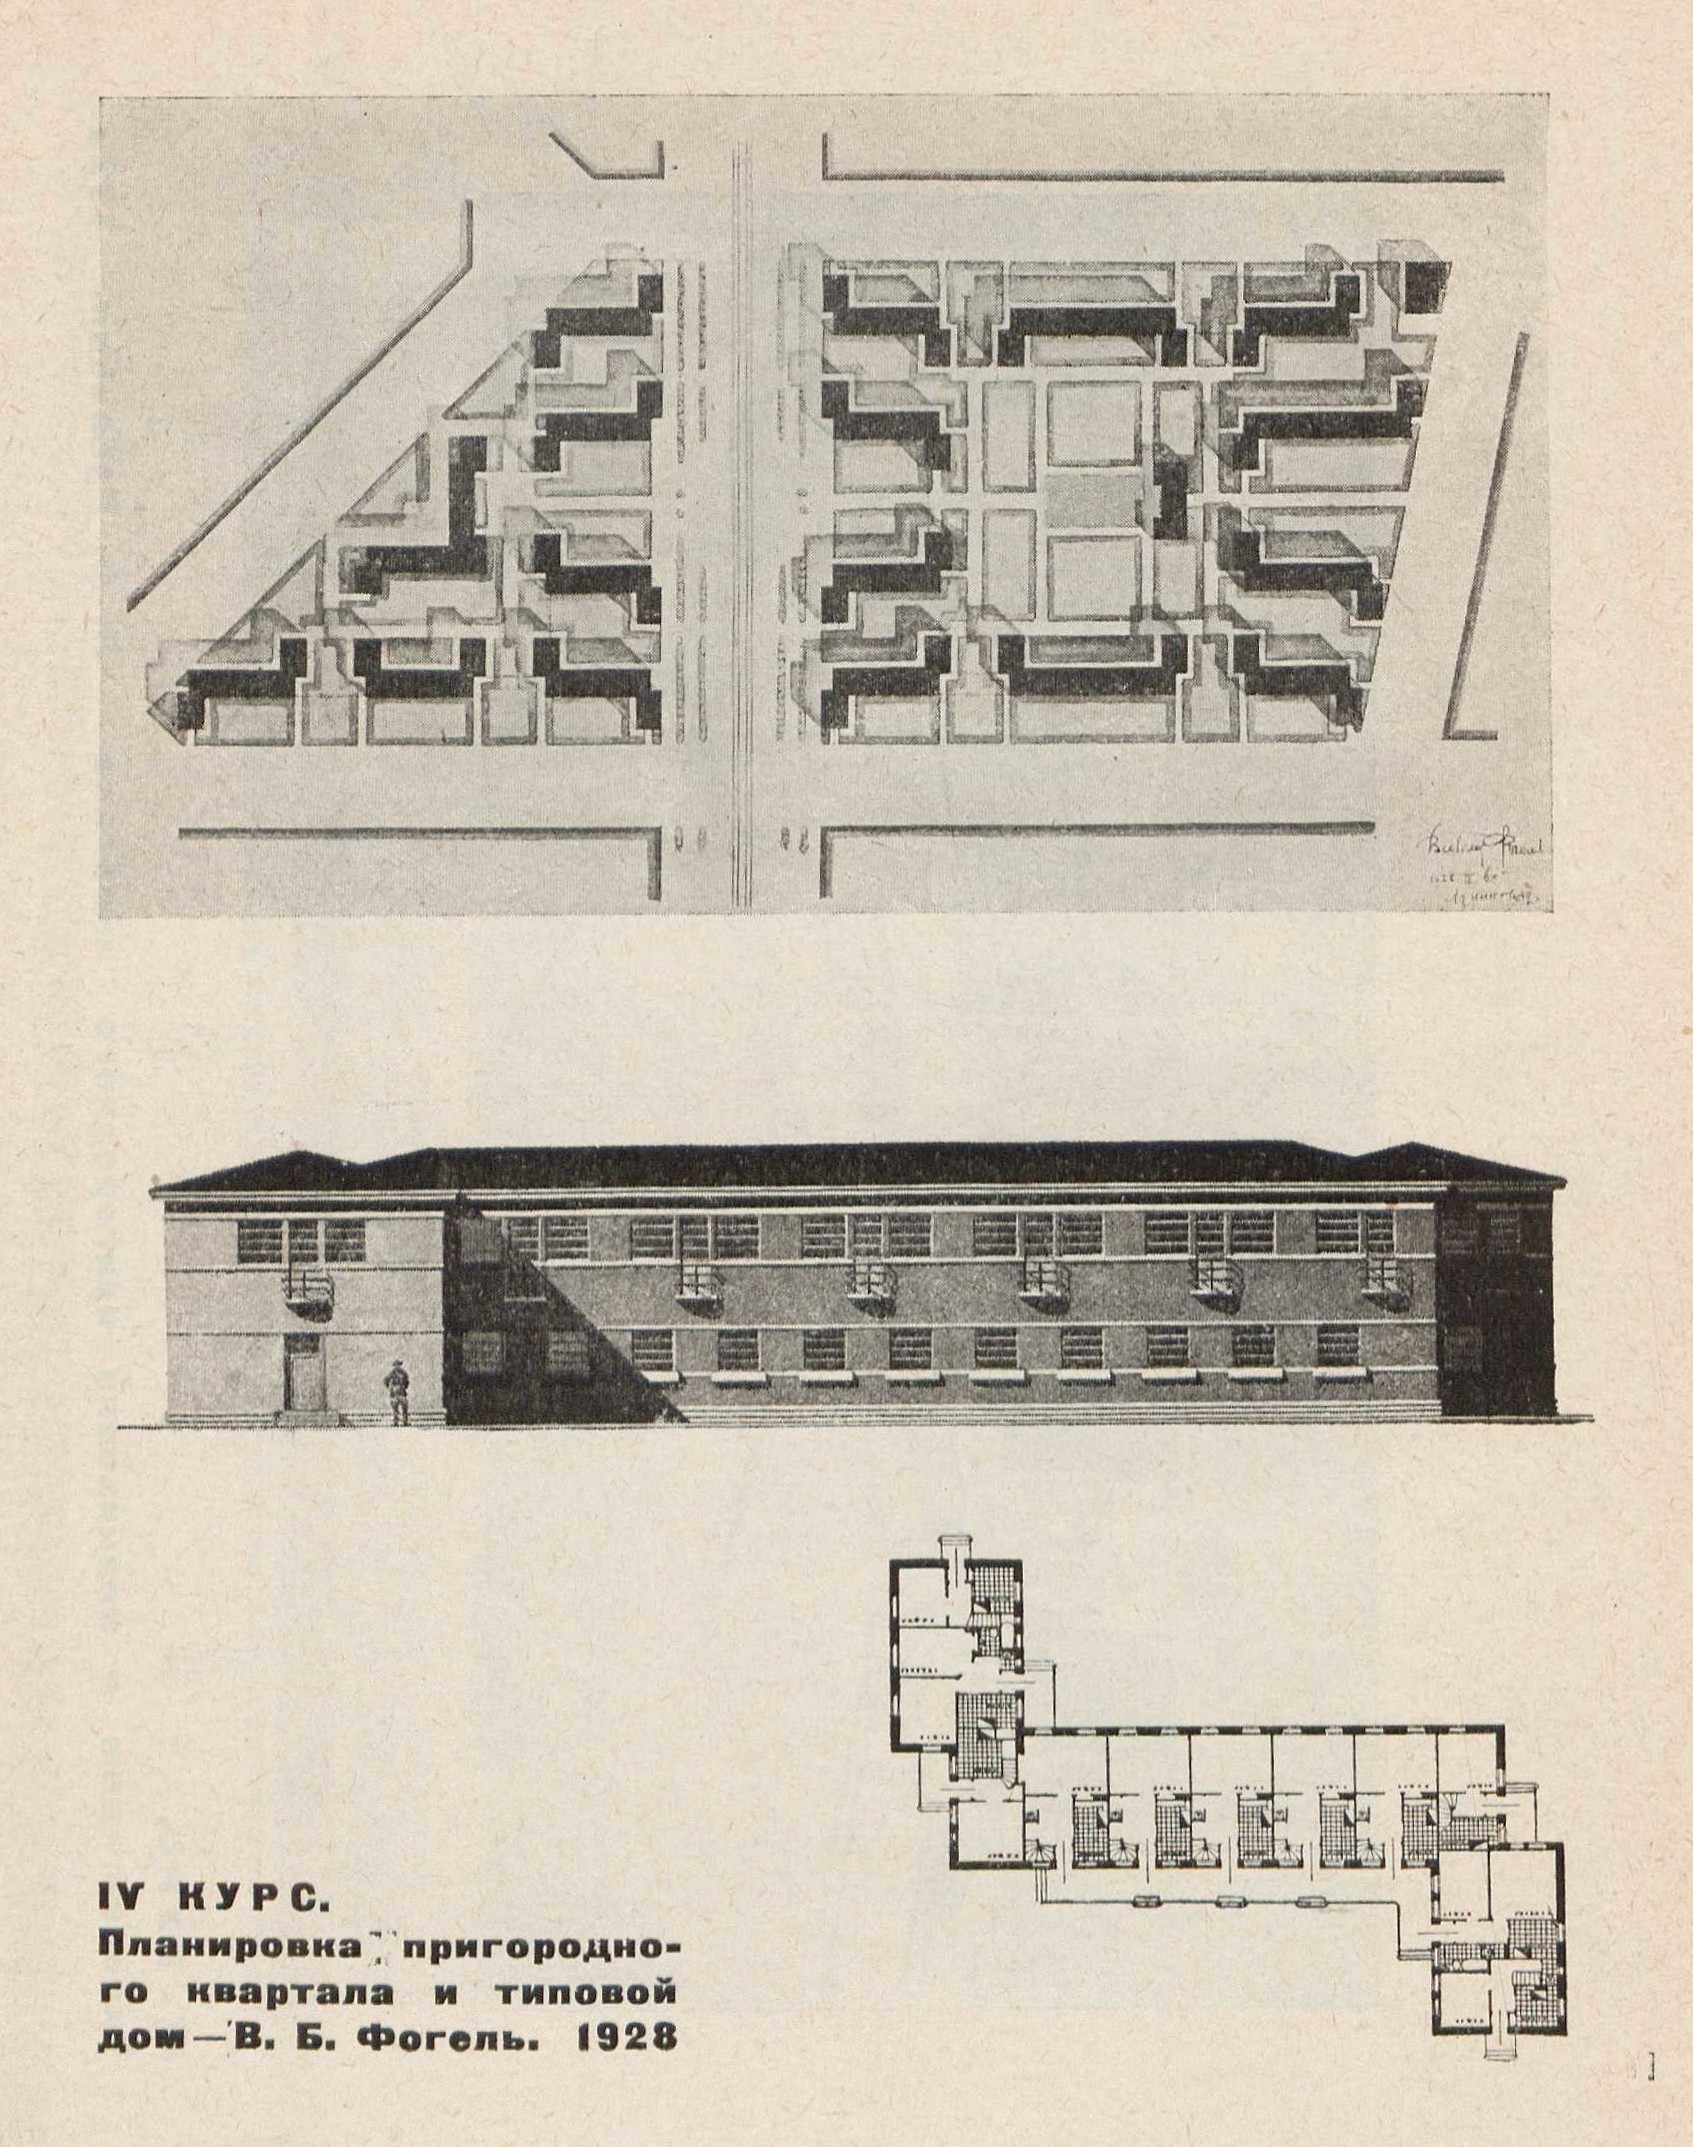 IV курс. Планировка пригородного квартала и типовой дом — В. Б. Фогель. 1928